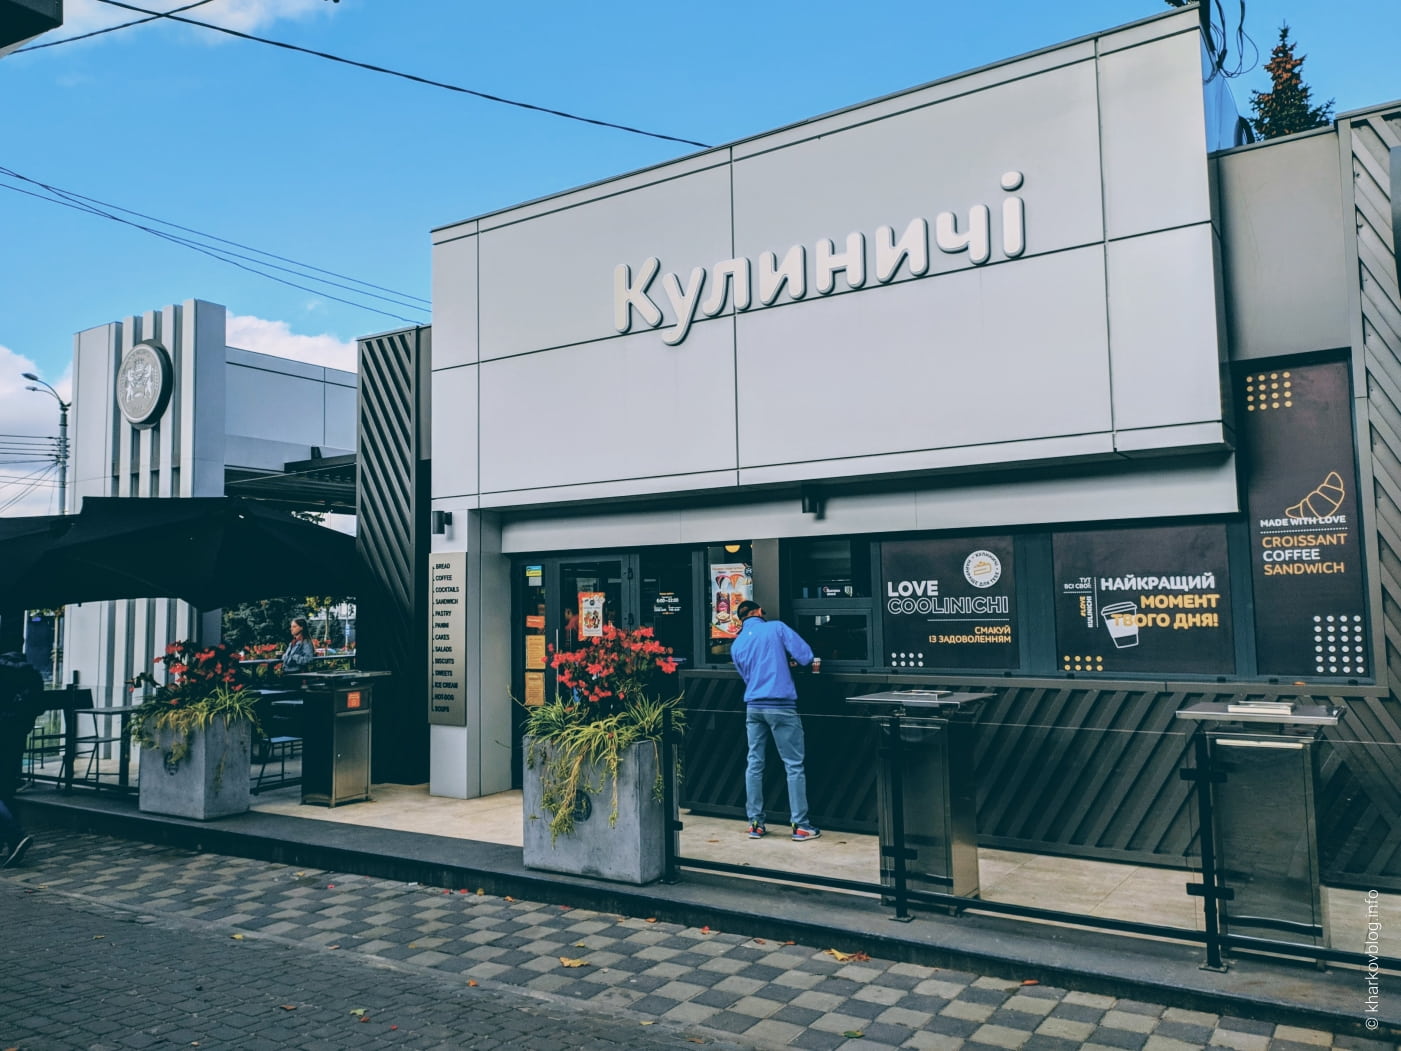 Кулиничи Харьков: ассортимент продукции, цены и меню кафе